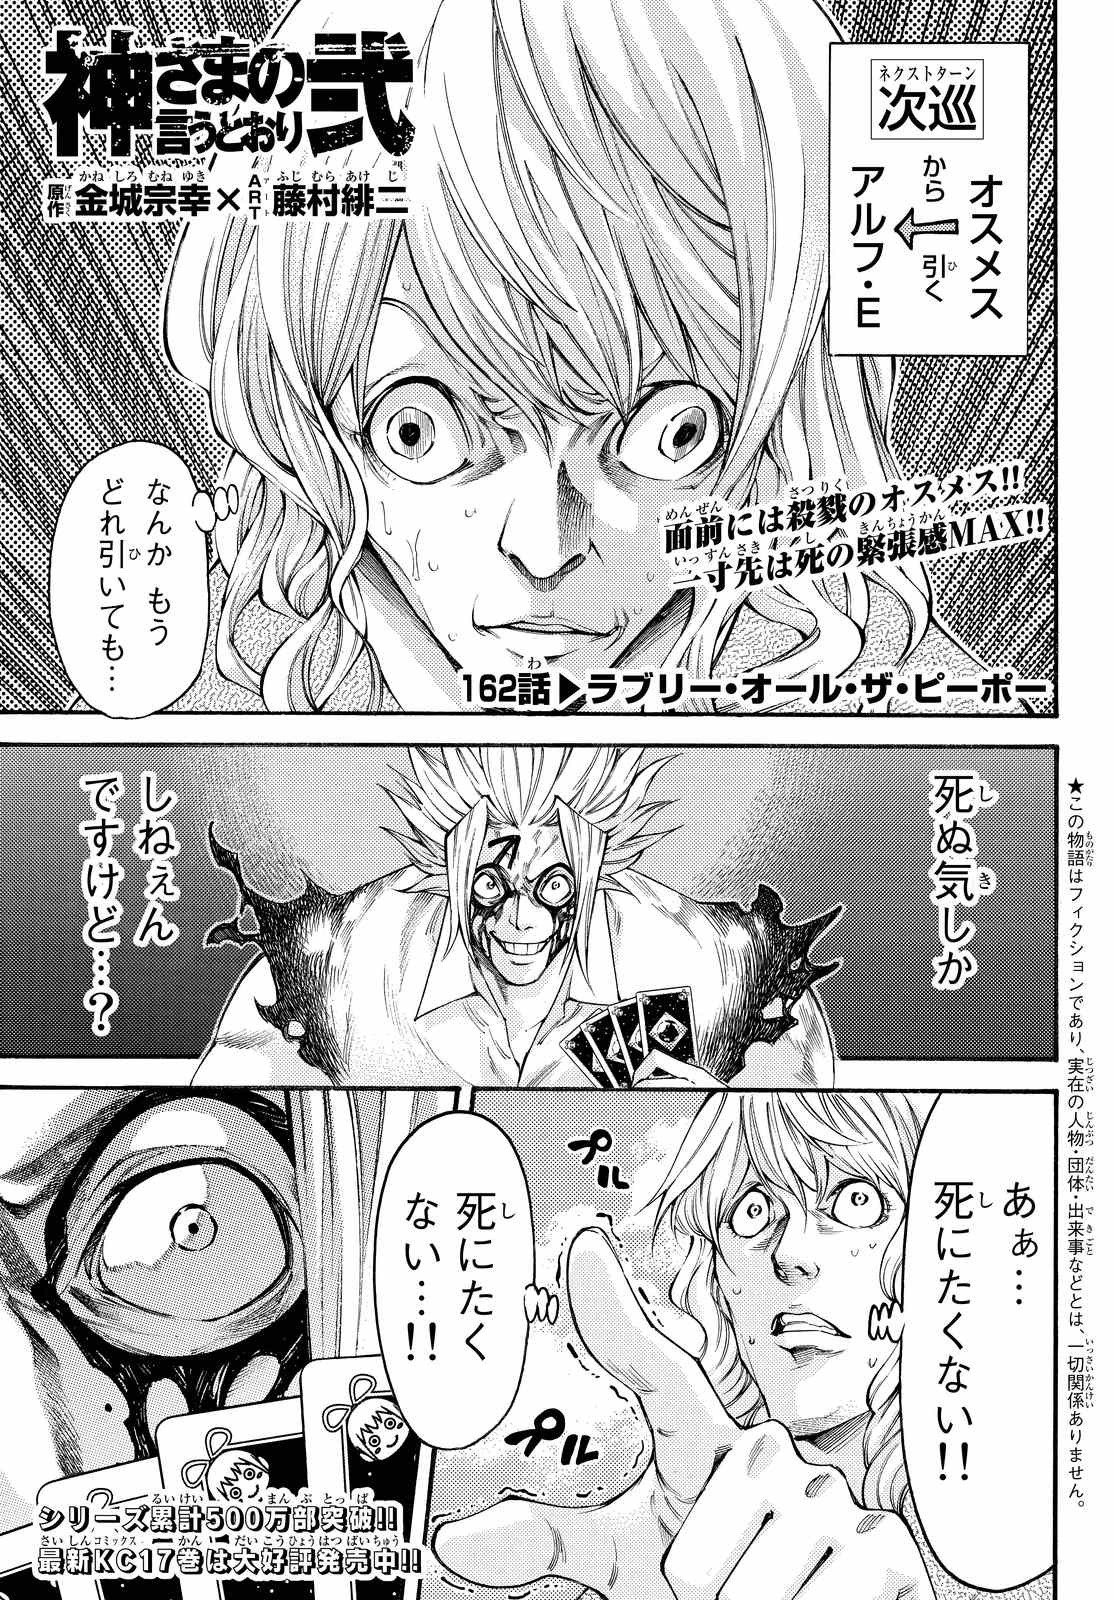 Kamisama no Ituori - Chapter 162 - Page 1